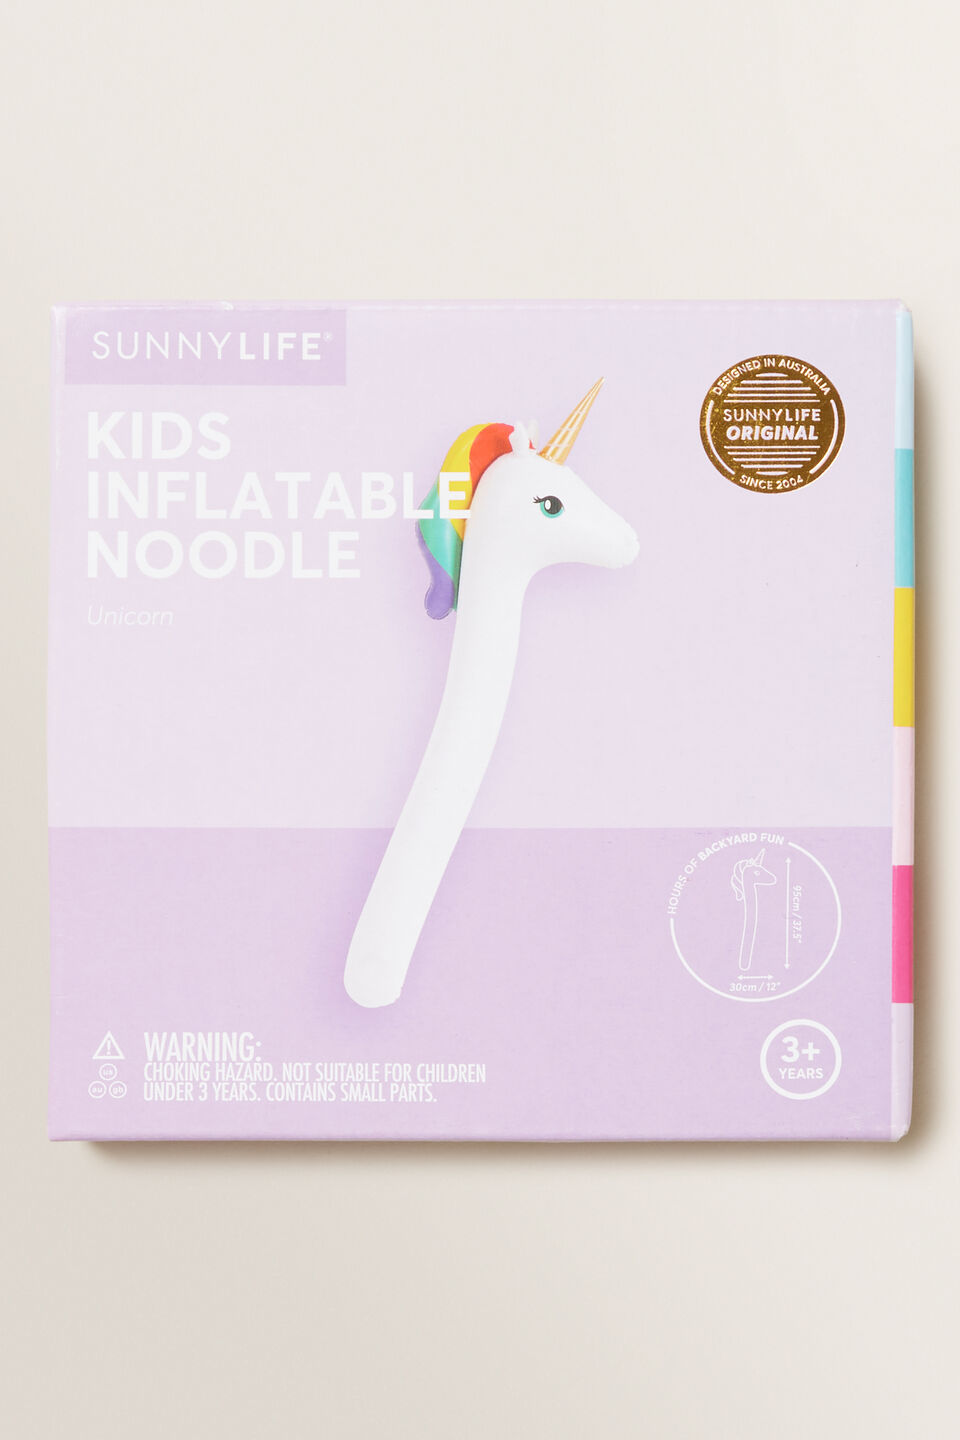 Inflatable Noodle Unicorn  